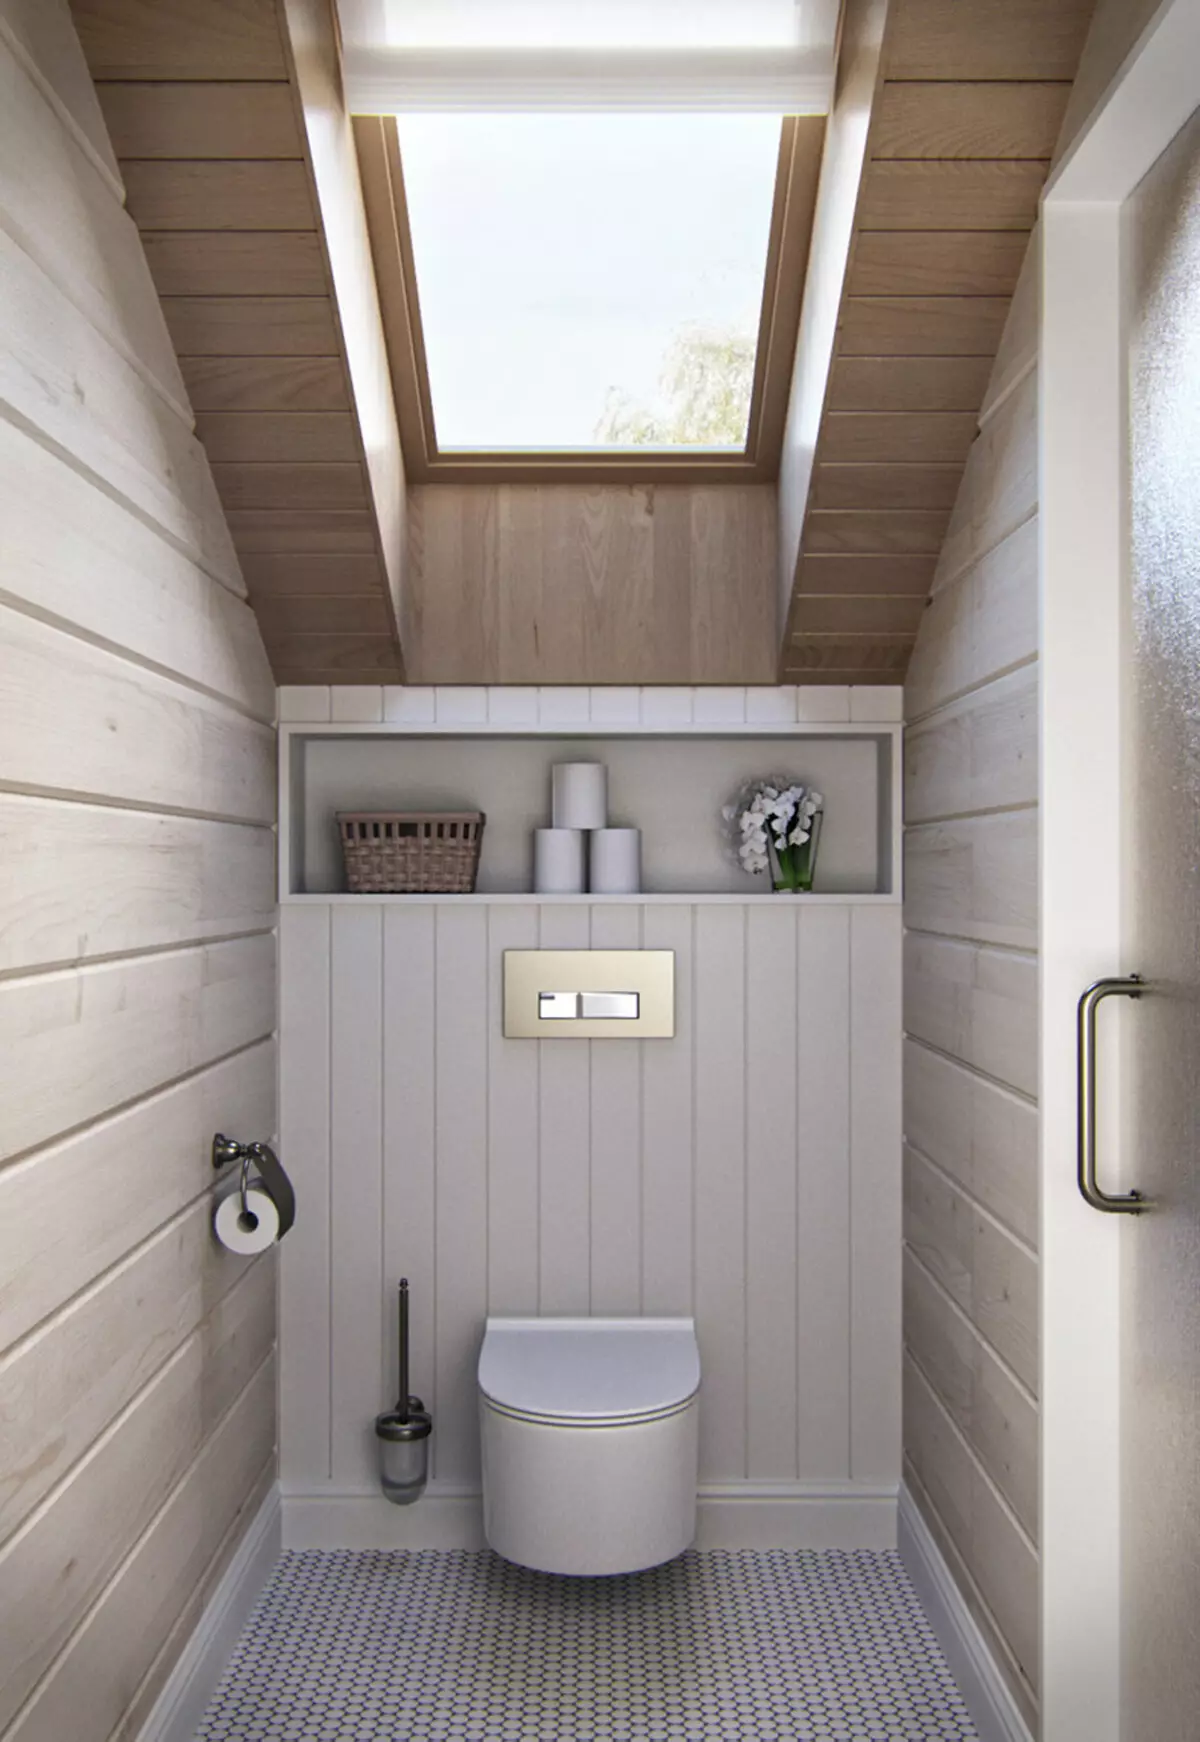 Badkamer in een houten huis (76 foto's): Kamerontwerp in een huis van een bar in het land, voorbeelden van vloerafwerking, ventilatie-regelingen 10475_65